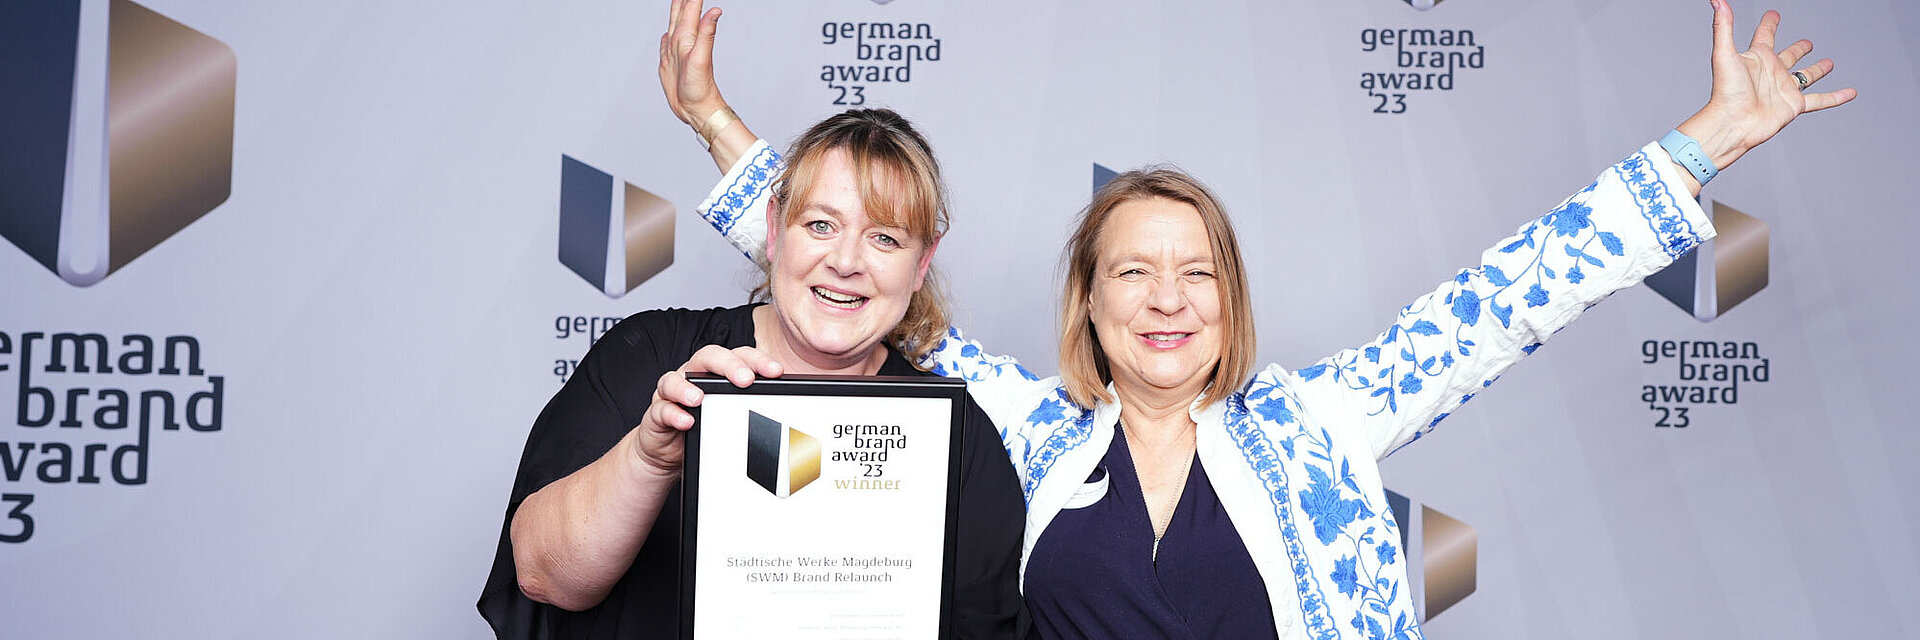 Zwei Frauen erhalten German Brand Award